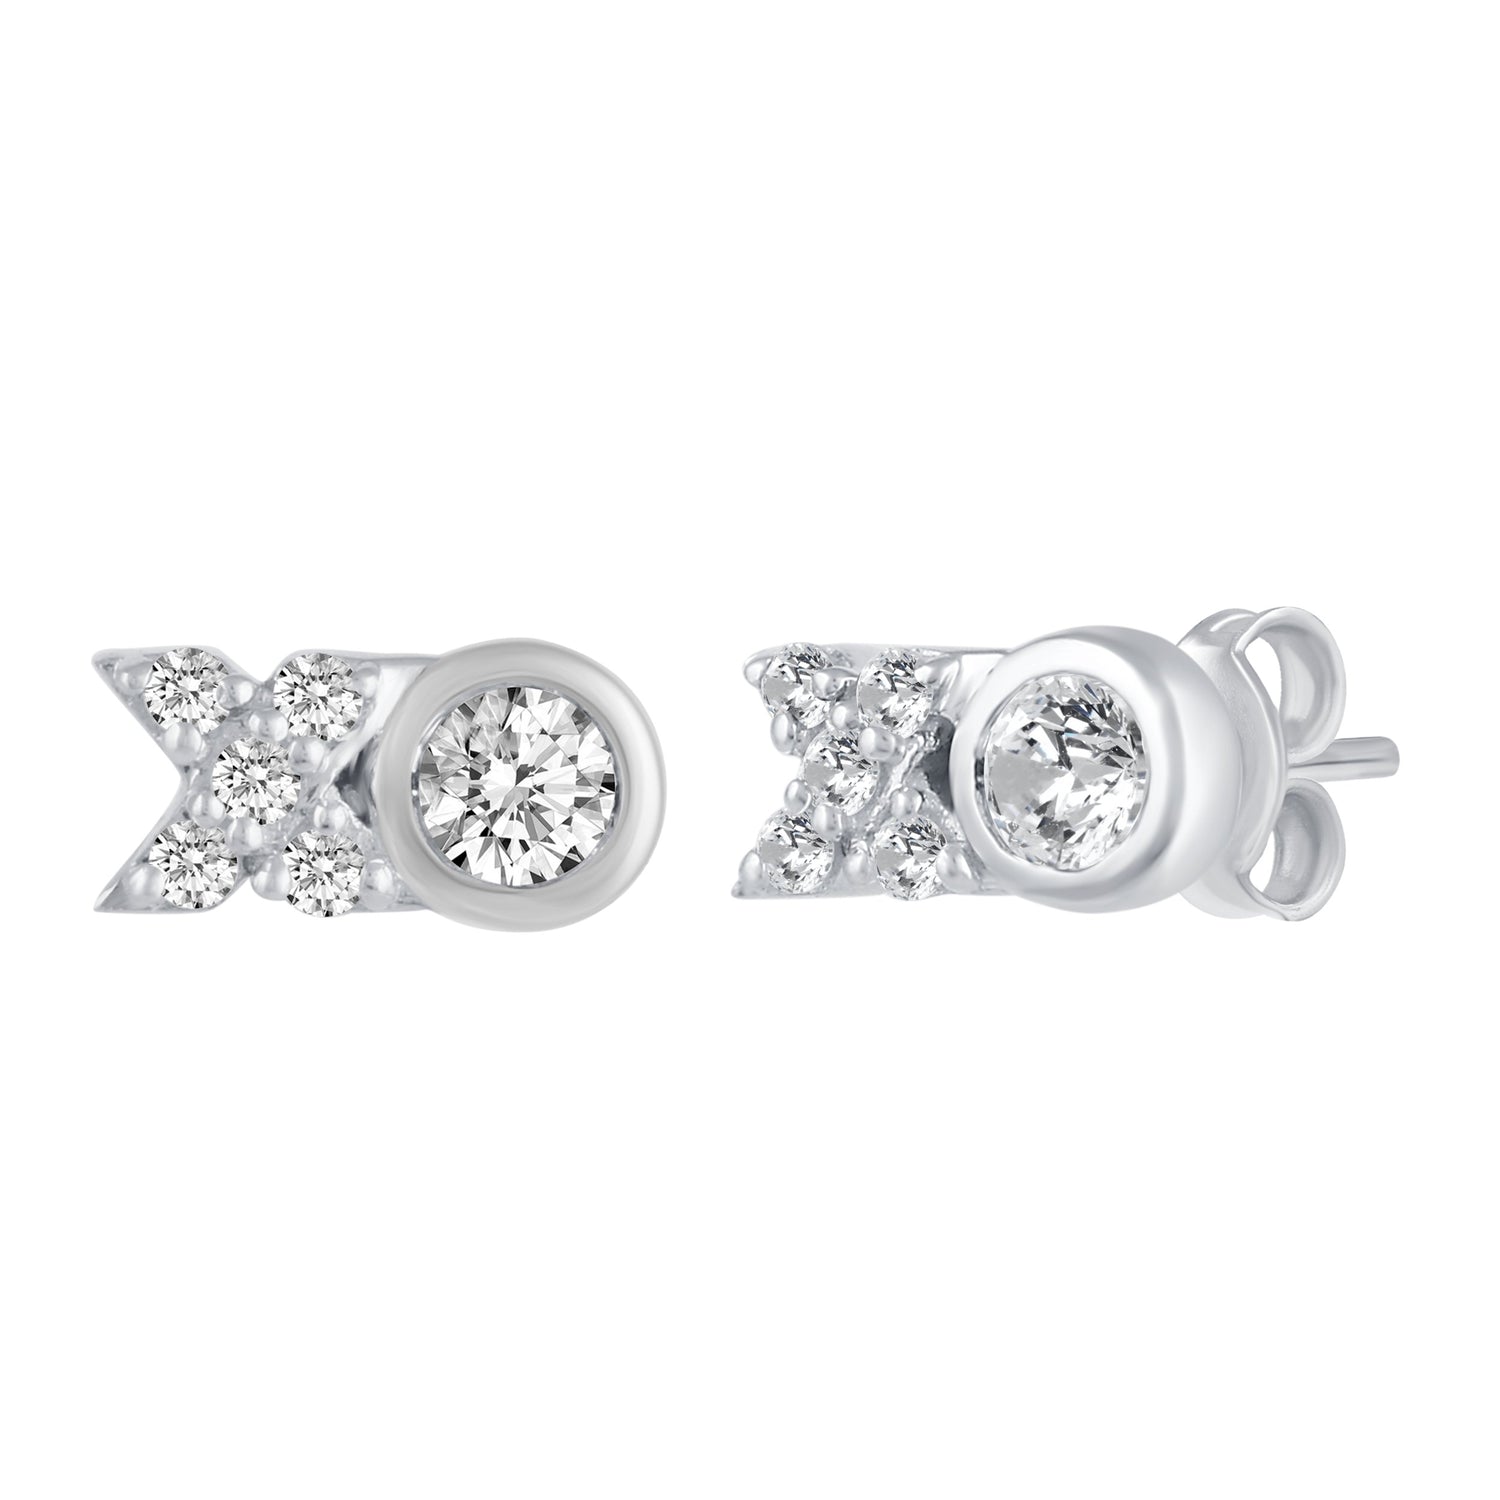 XO 1/4 Ctw Natural Diamond Stud Earrings set in 925 Sterling Silver fine jewelry